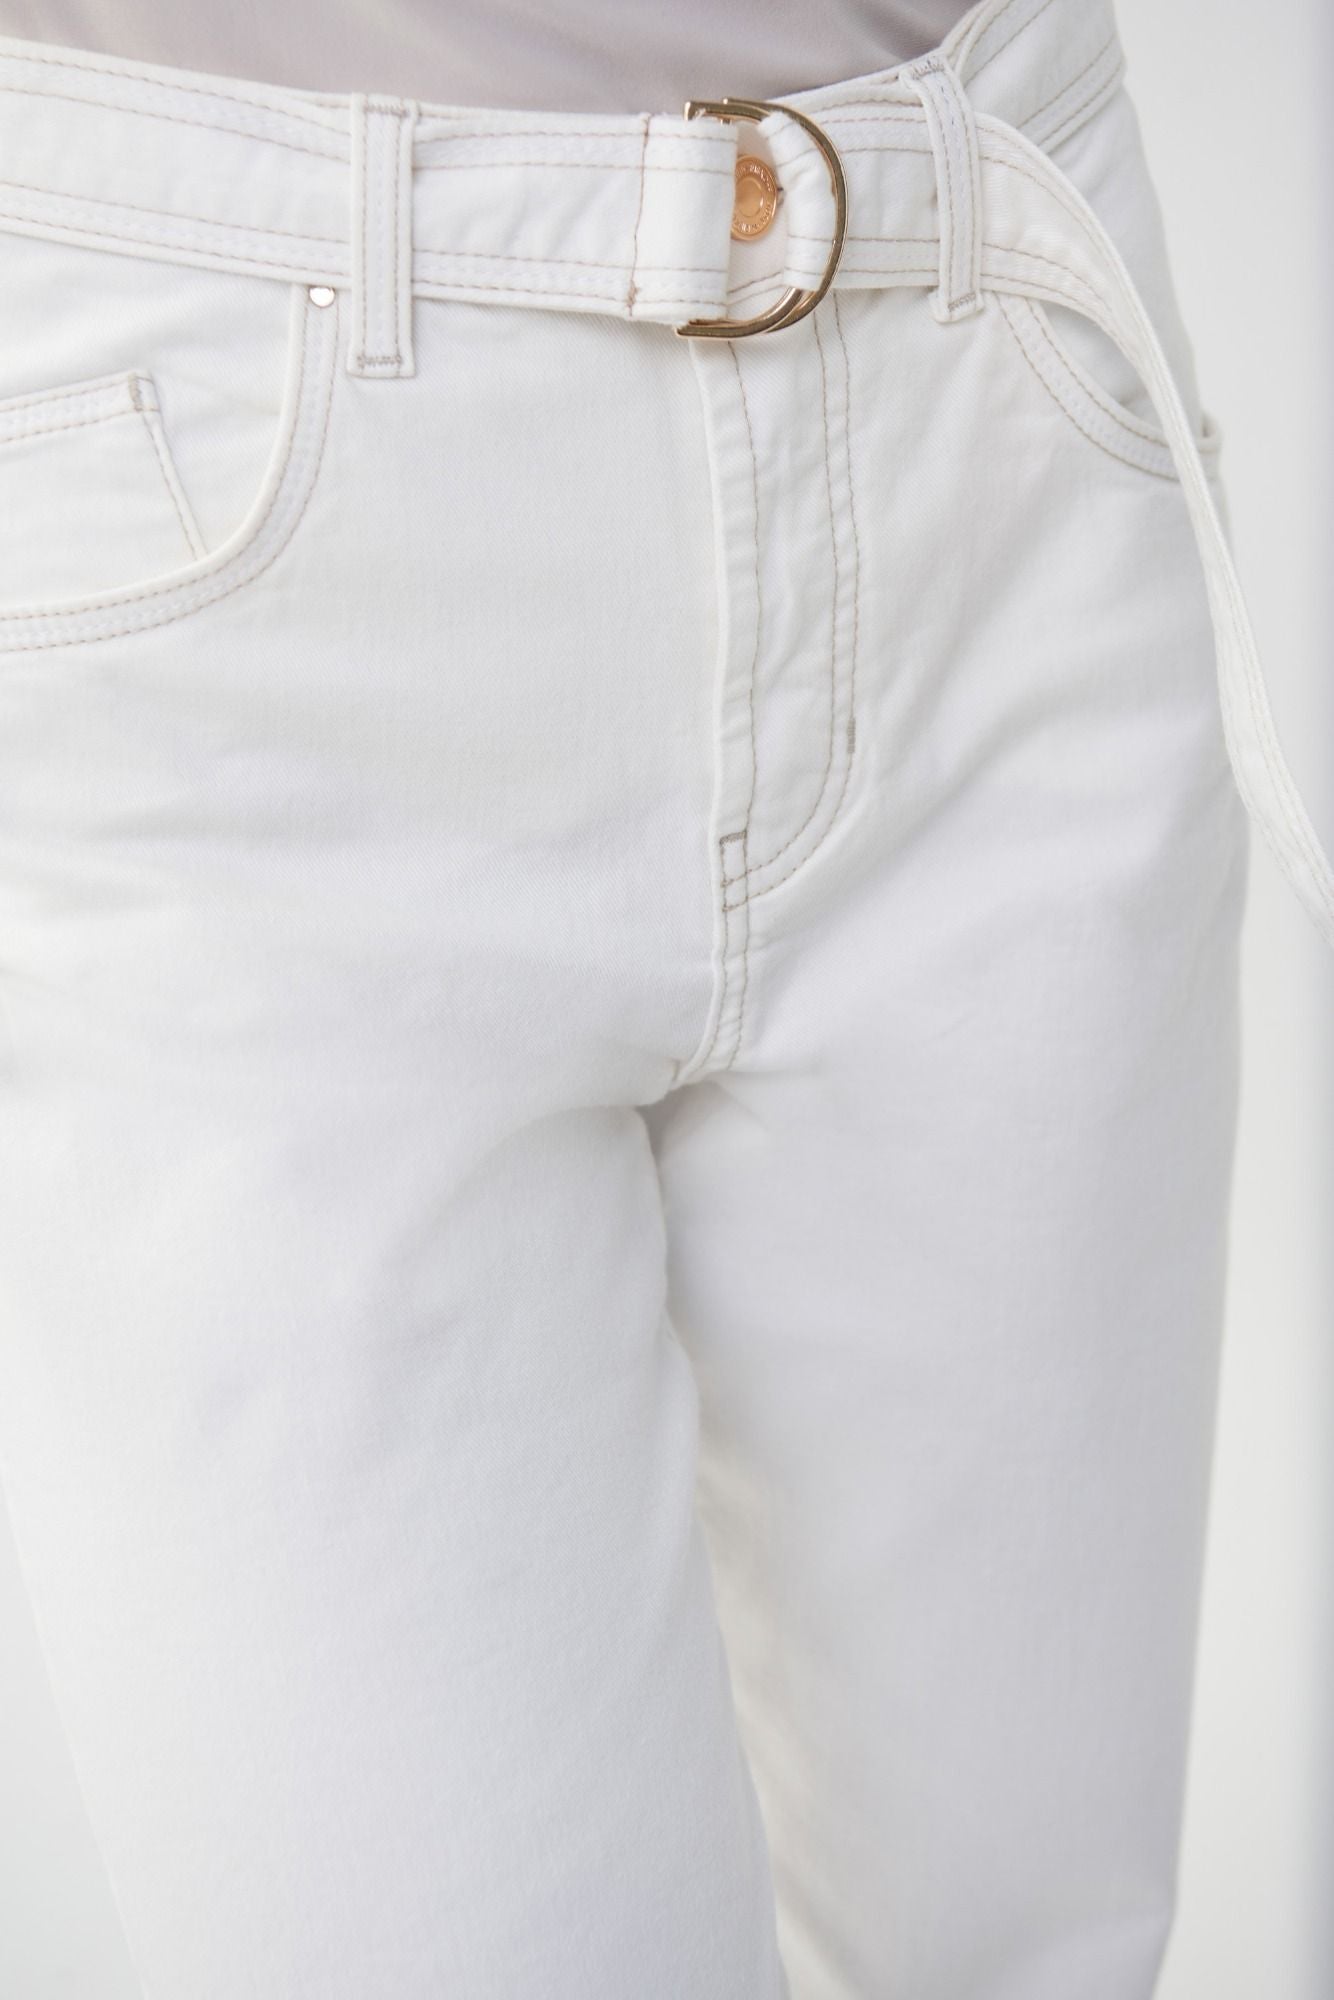 Joseph Ribkoff White Jeans